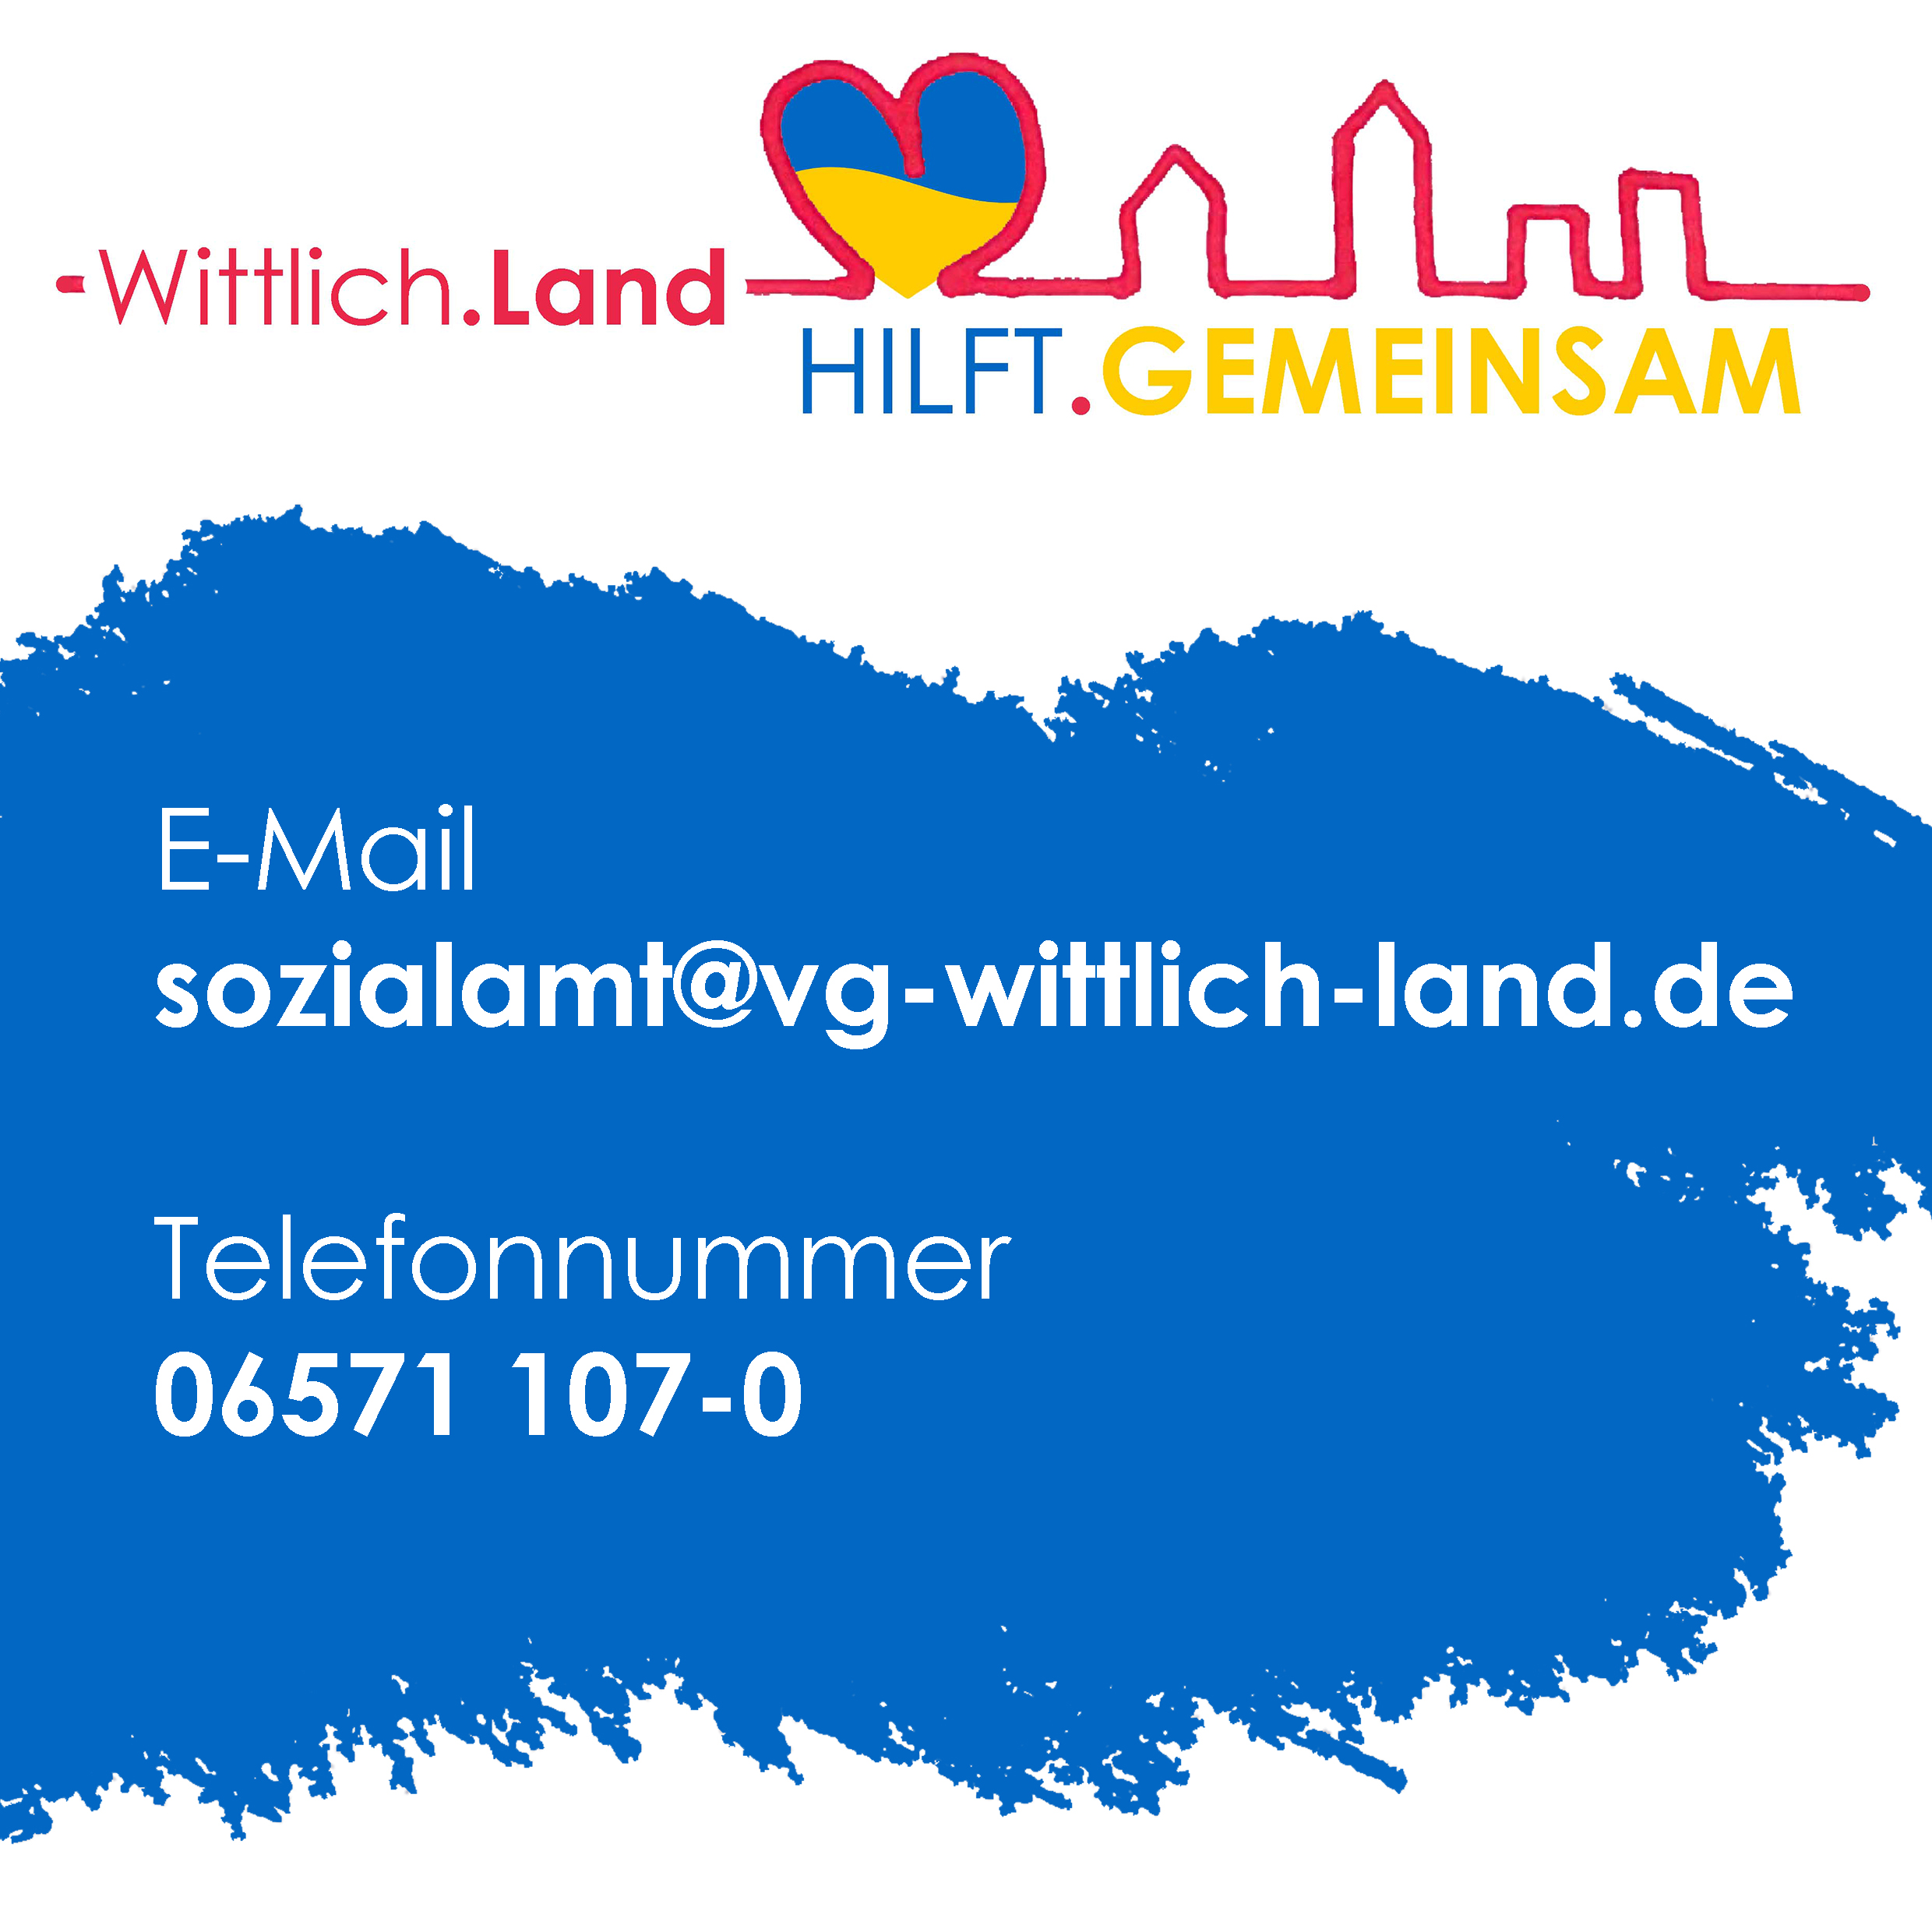 Kontakte Wittlich-Land hilft gemeinsam